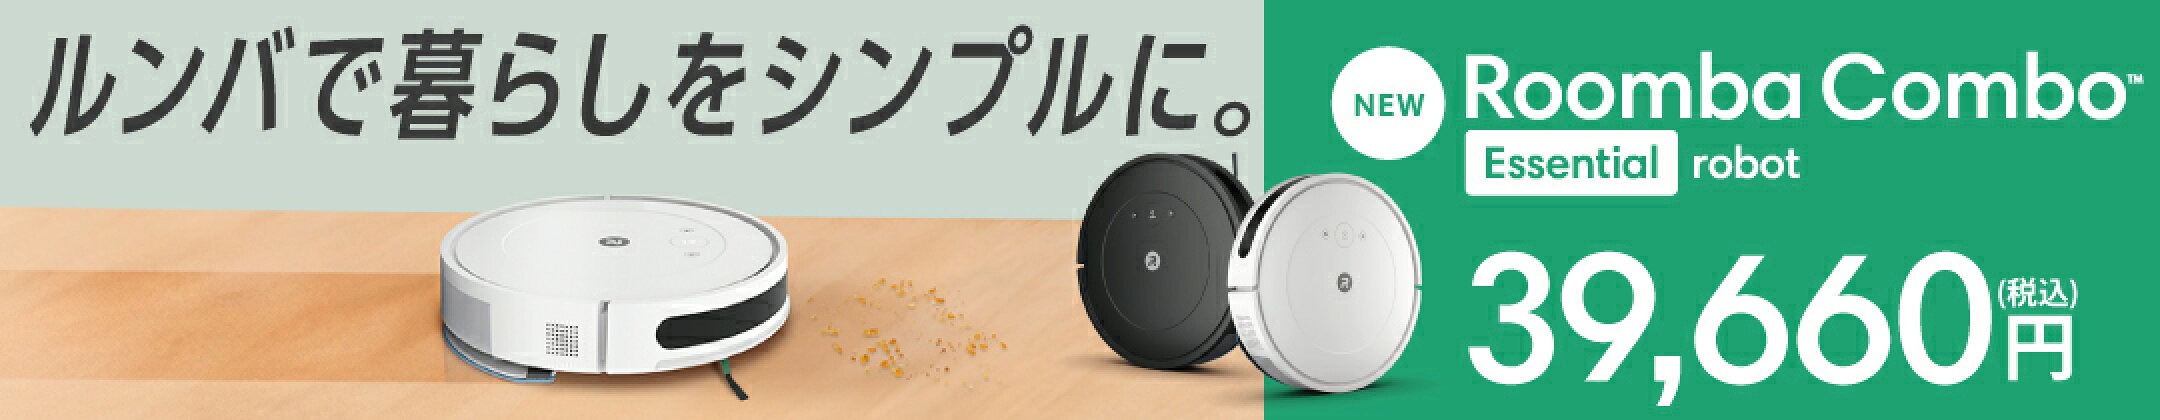 ルンバで暮らしをシンプルに。 Roomba Combo Essential robot